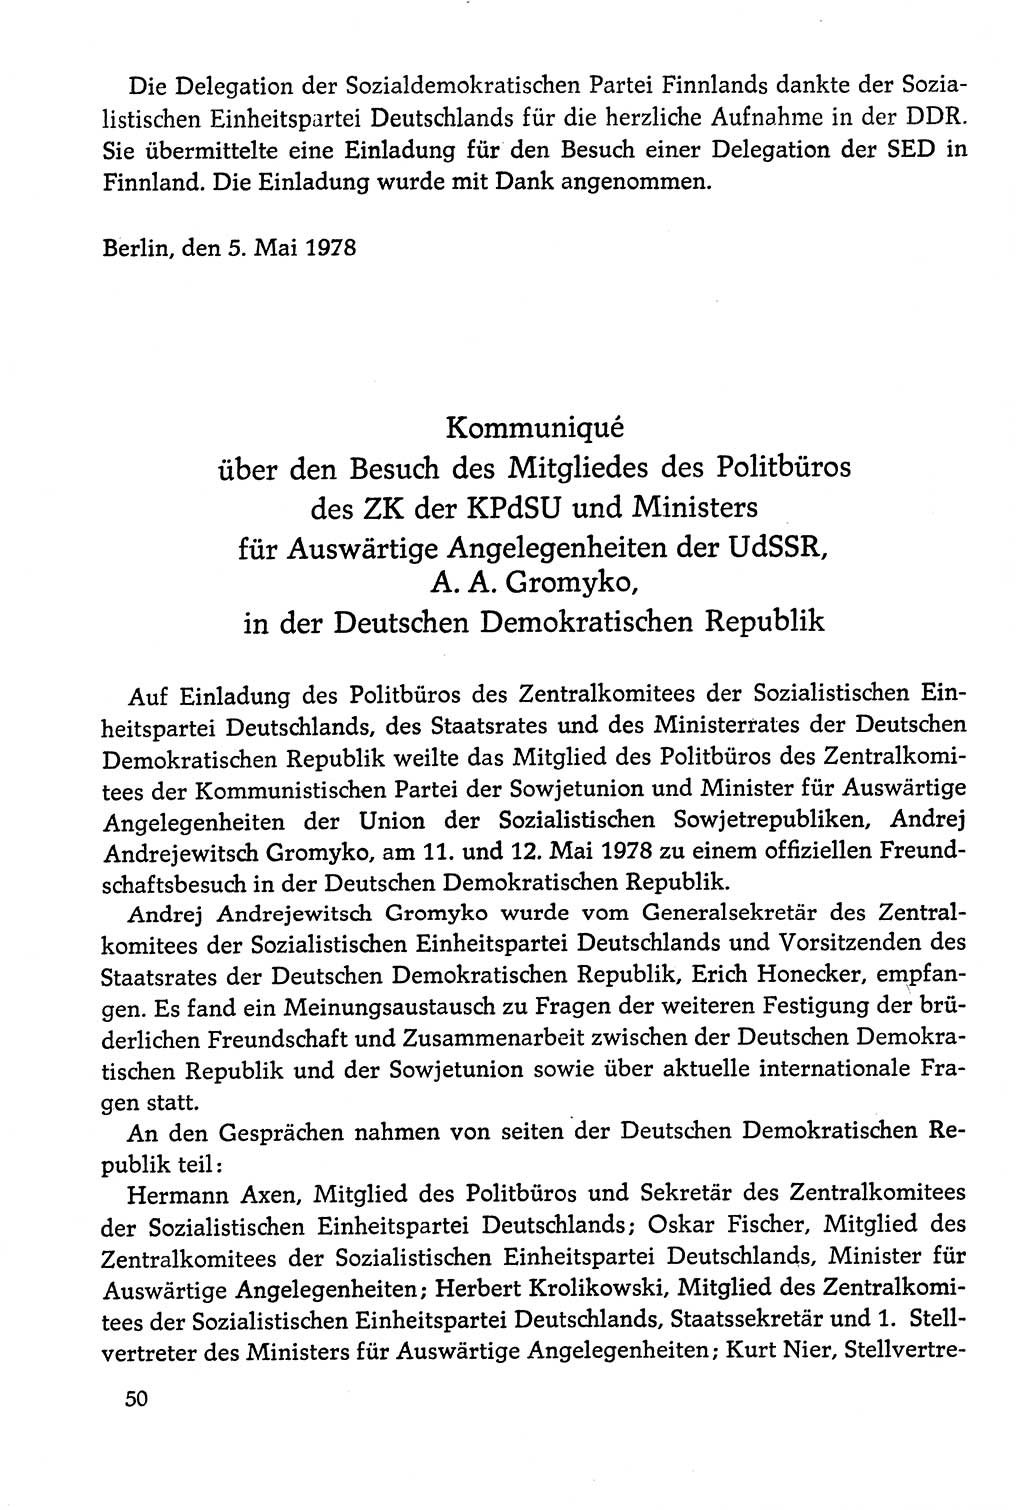 Dokumente der Sozialistischen Einheitspartei Deutschlands (SED) [Deutsche Demokratische Republik (DDR)] 1978-1979, Seite 50 (Dok. SED DDR 1978-1979, S. 50)